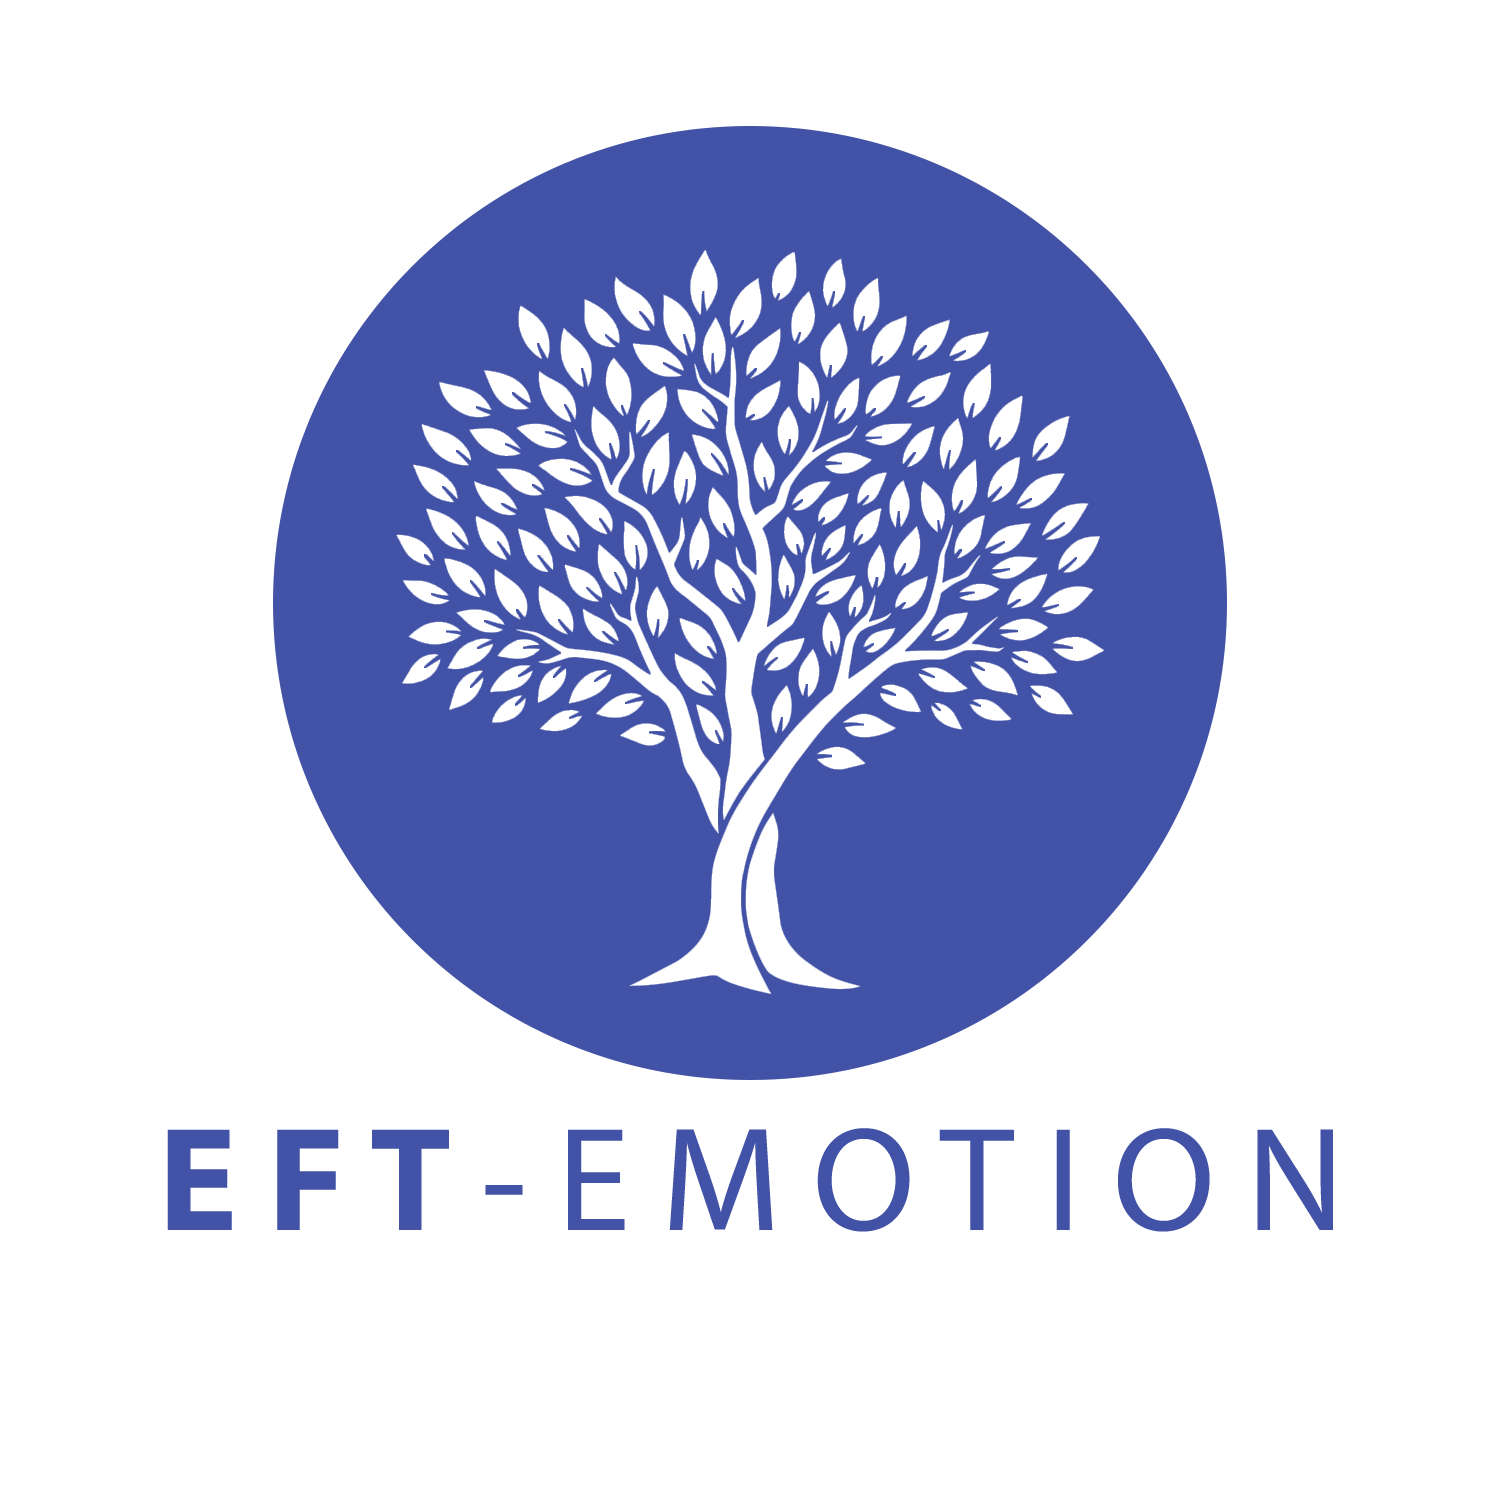 EFT-Emotion